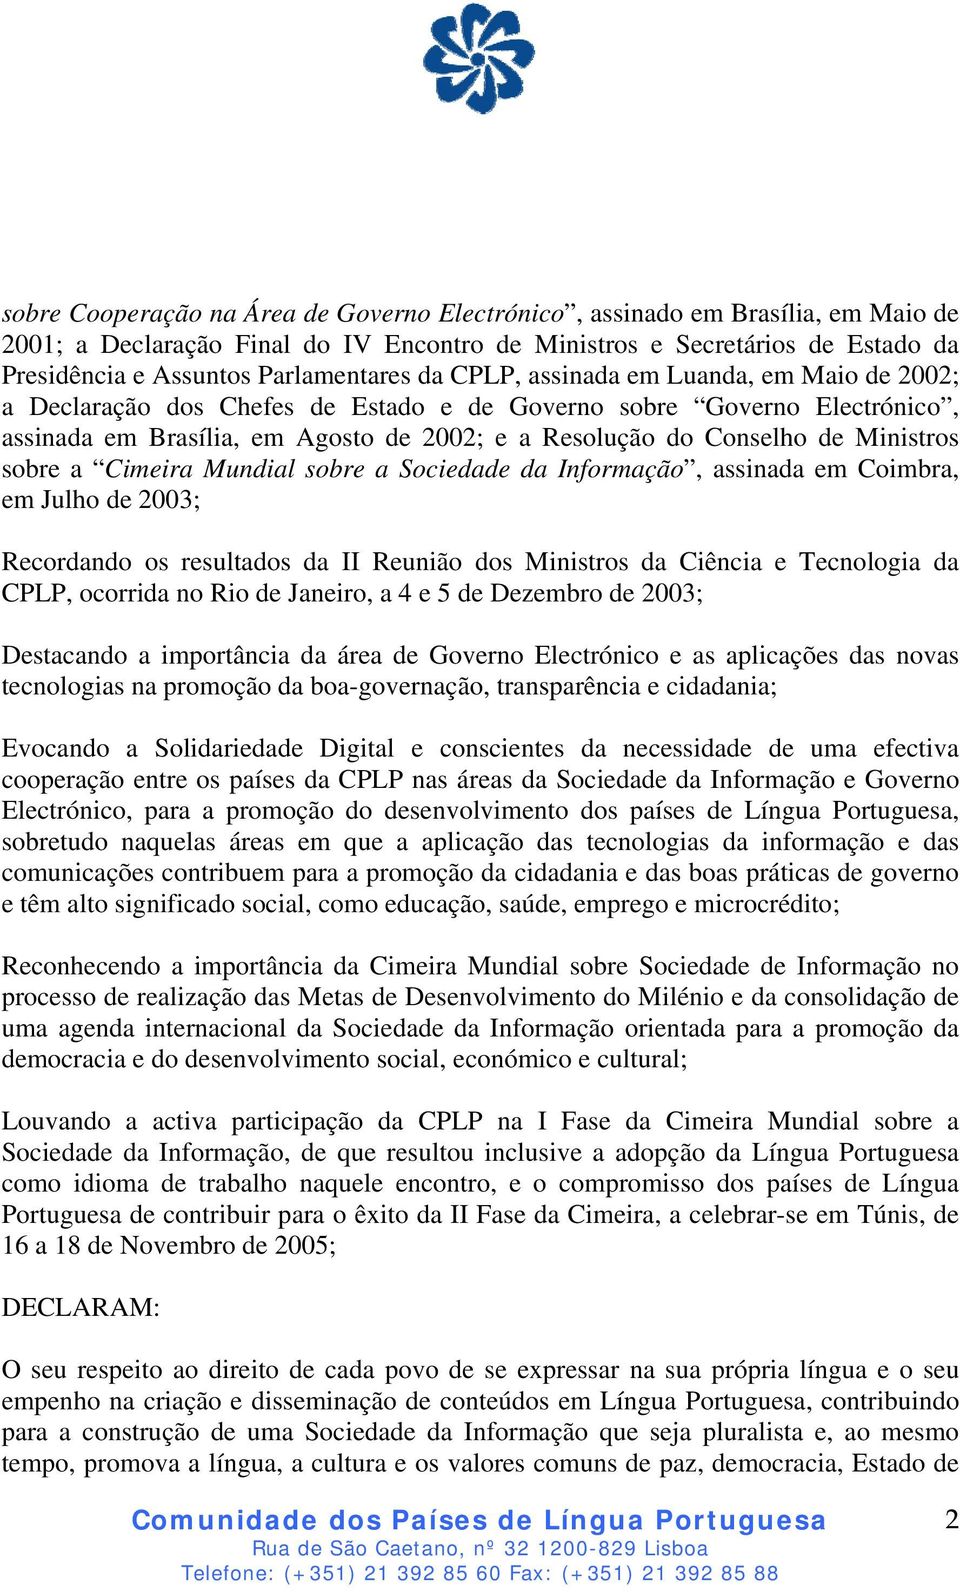 sobre a Cimeira Mundial sobre a Sociedade da Informação, assinada em Coimbra, em Julho de 2003; Recordando os resultados da II Reunião dos Ministros da Ciência e Tecnologia da CPLP, ocorrida no Rio